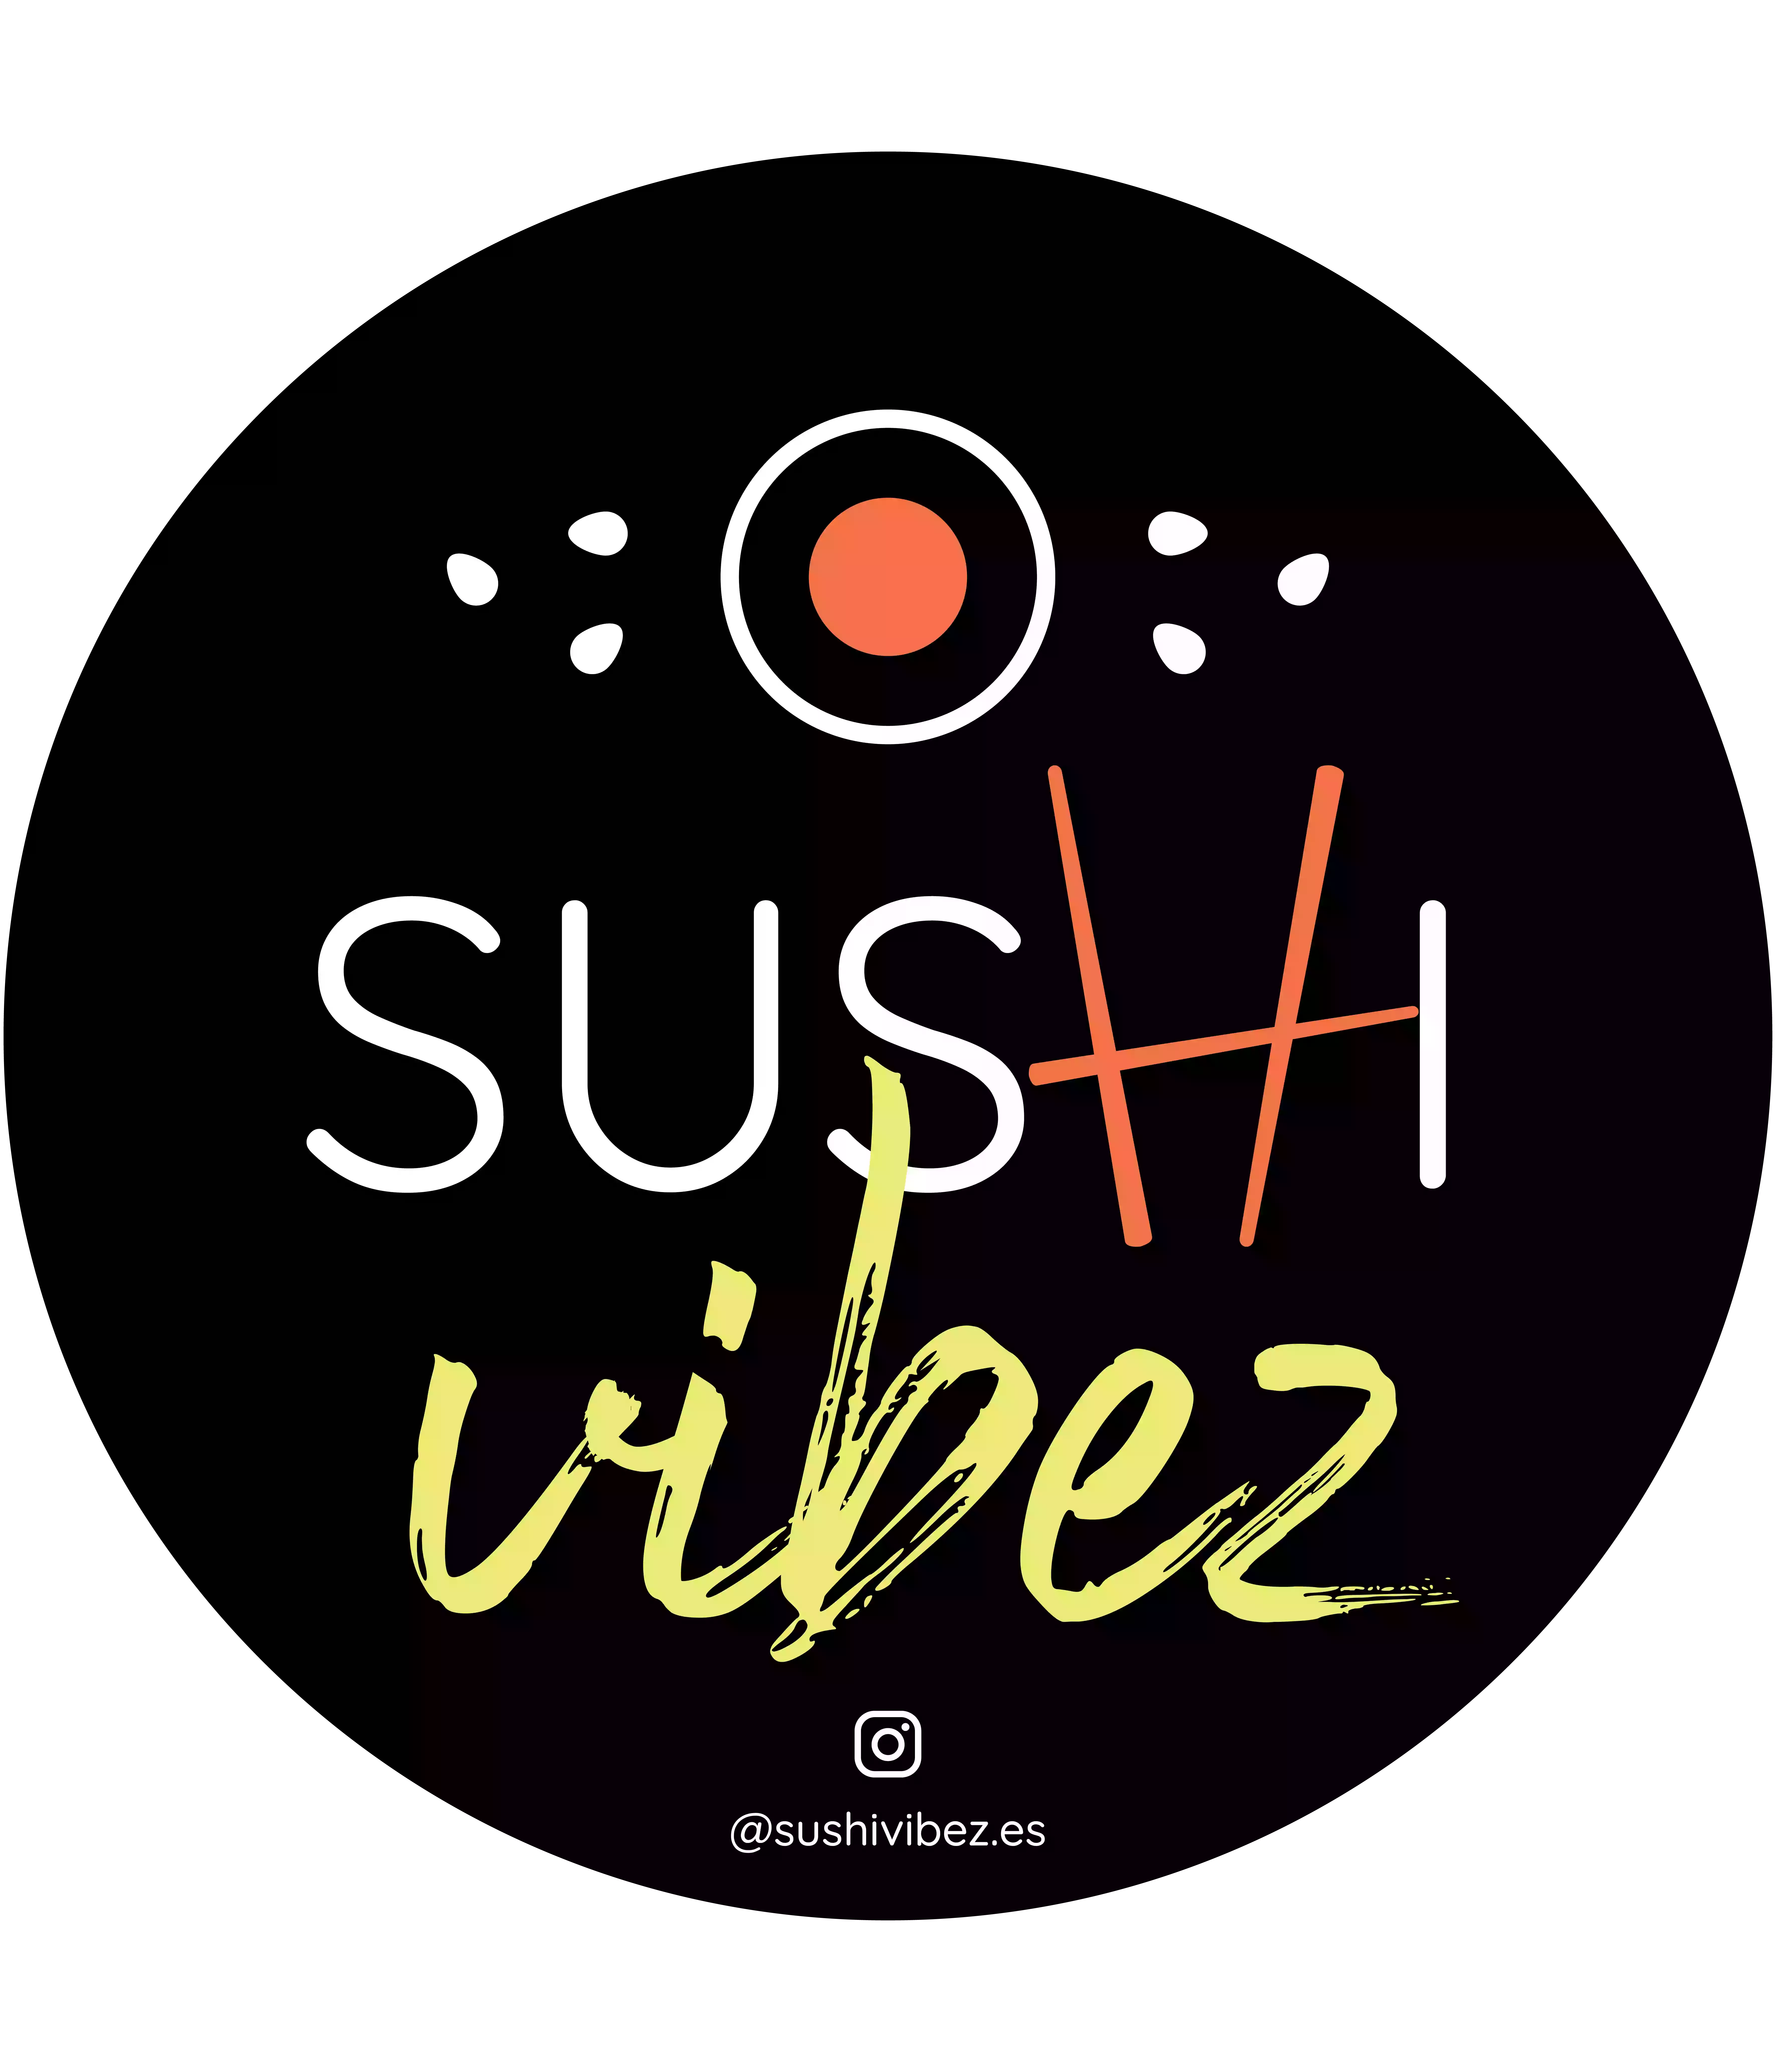 Sushi Vibez